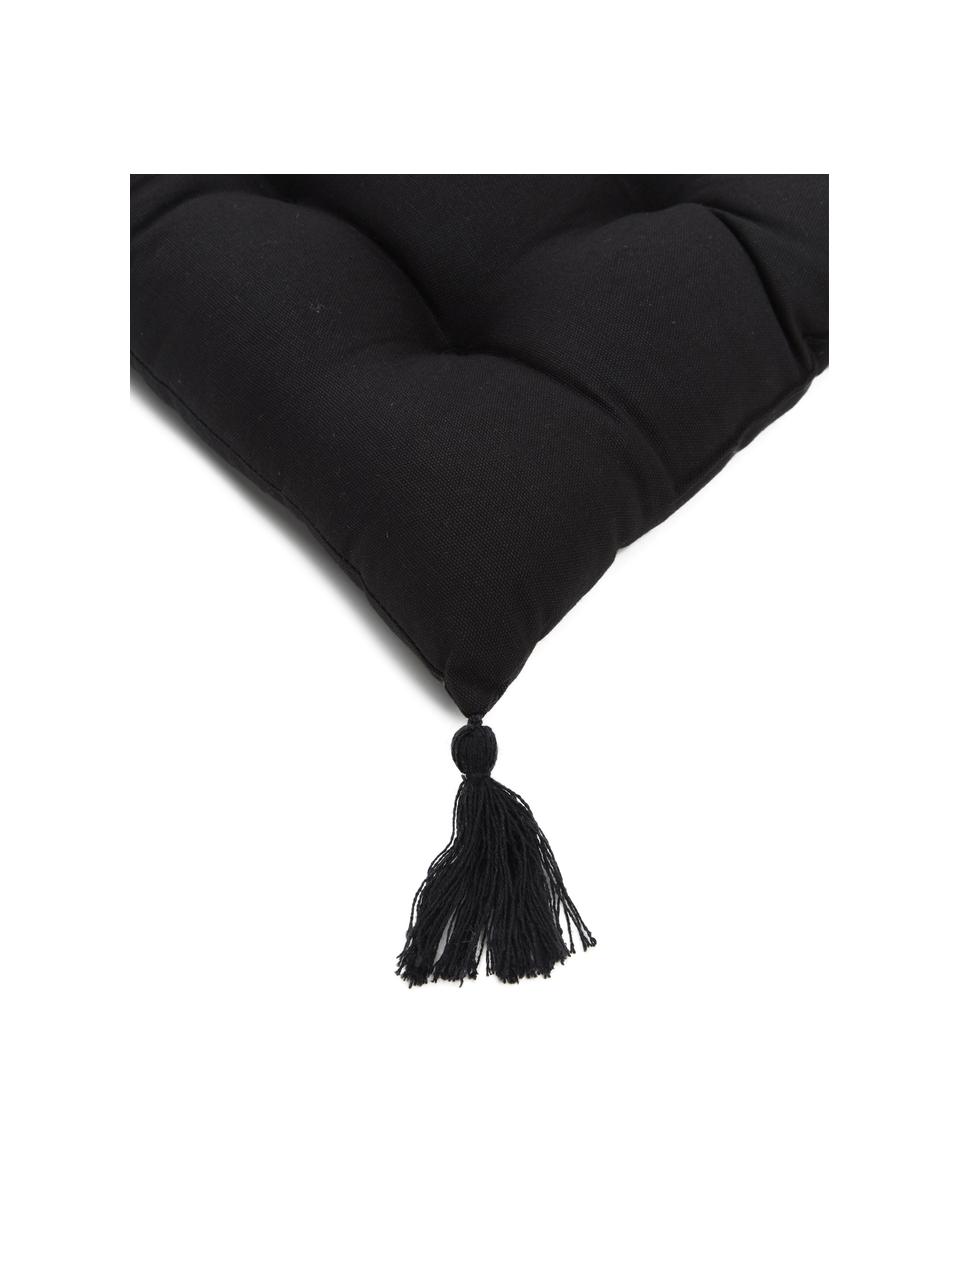 Cuscino sedia in cotone nero con nappe Ava, Rivestimento: 100% cotone, Nero, Larg. 40 x Lung. 40 cm